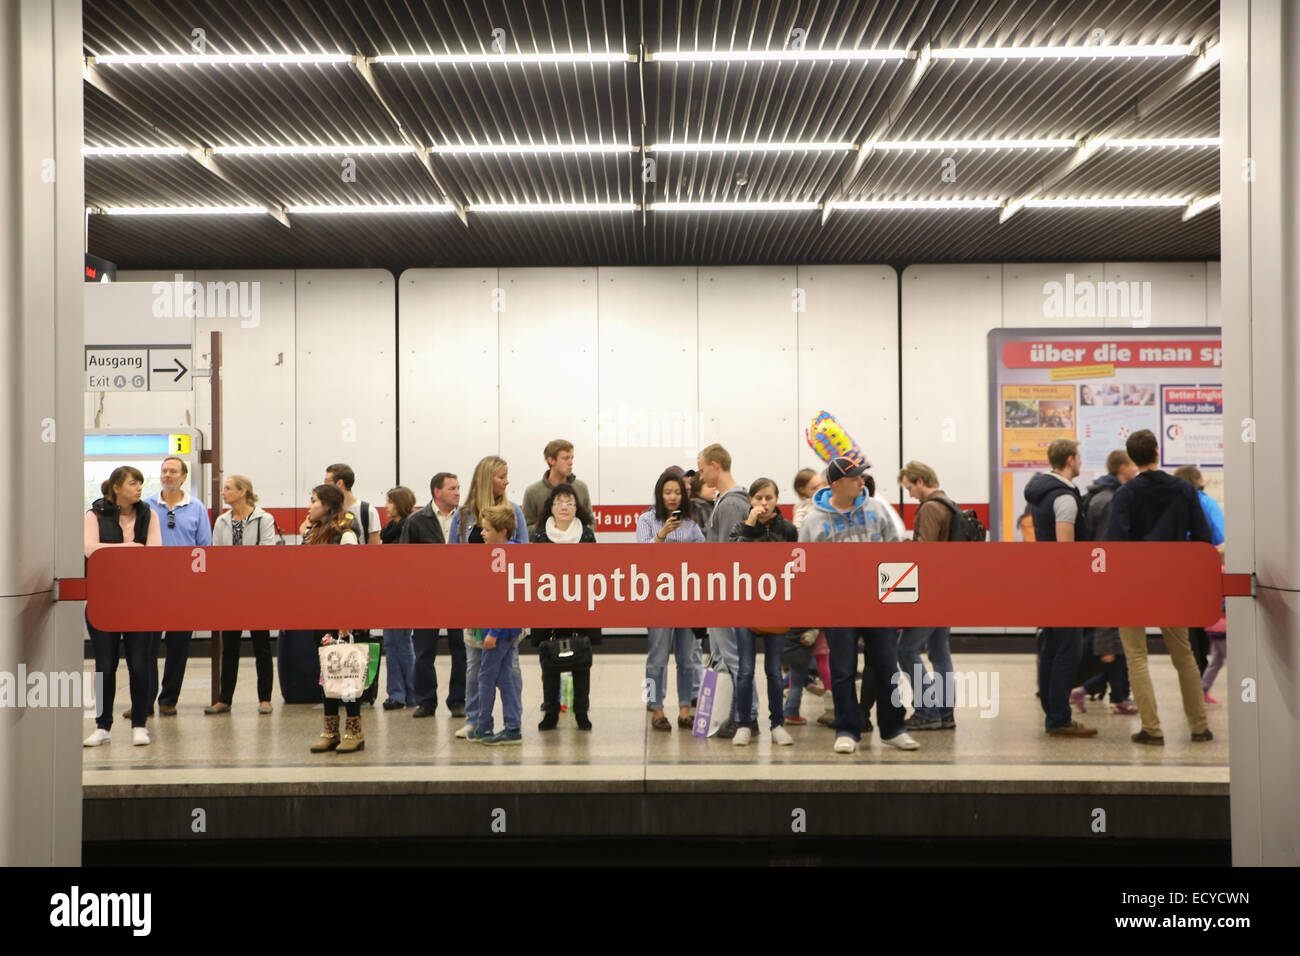 Multitud de personas esperando el metro tren Hauptbahnhof, la estación central de Munich Foto de stock